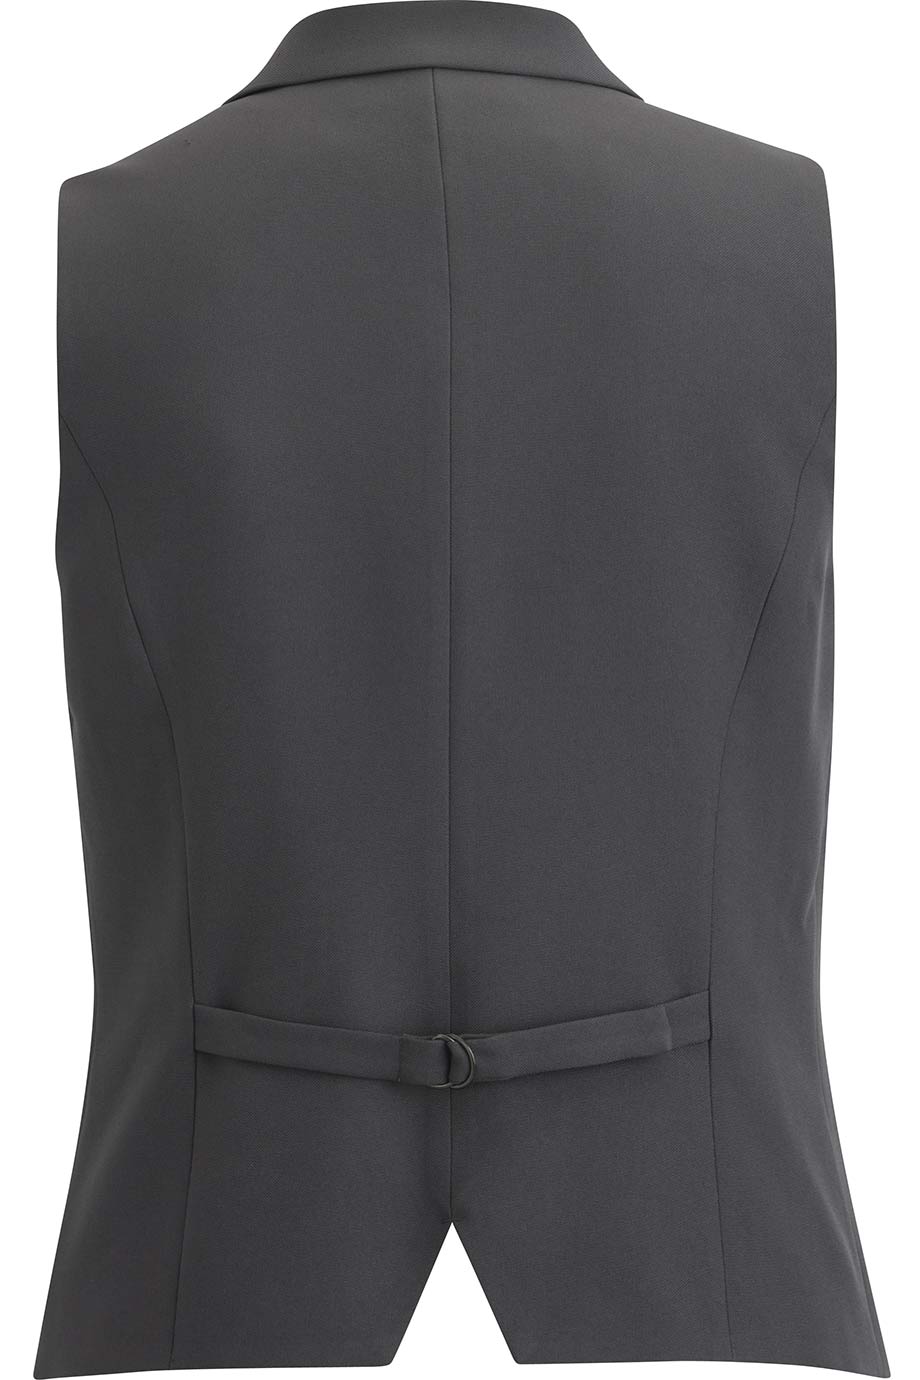 DRESS LAPEL VEST | Edwards Garment